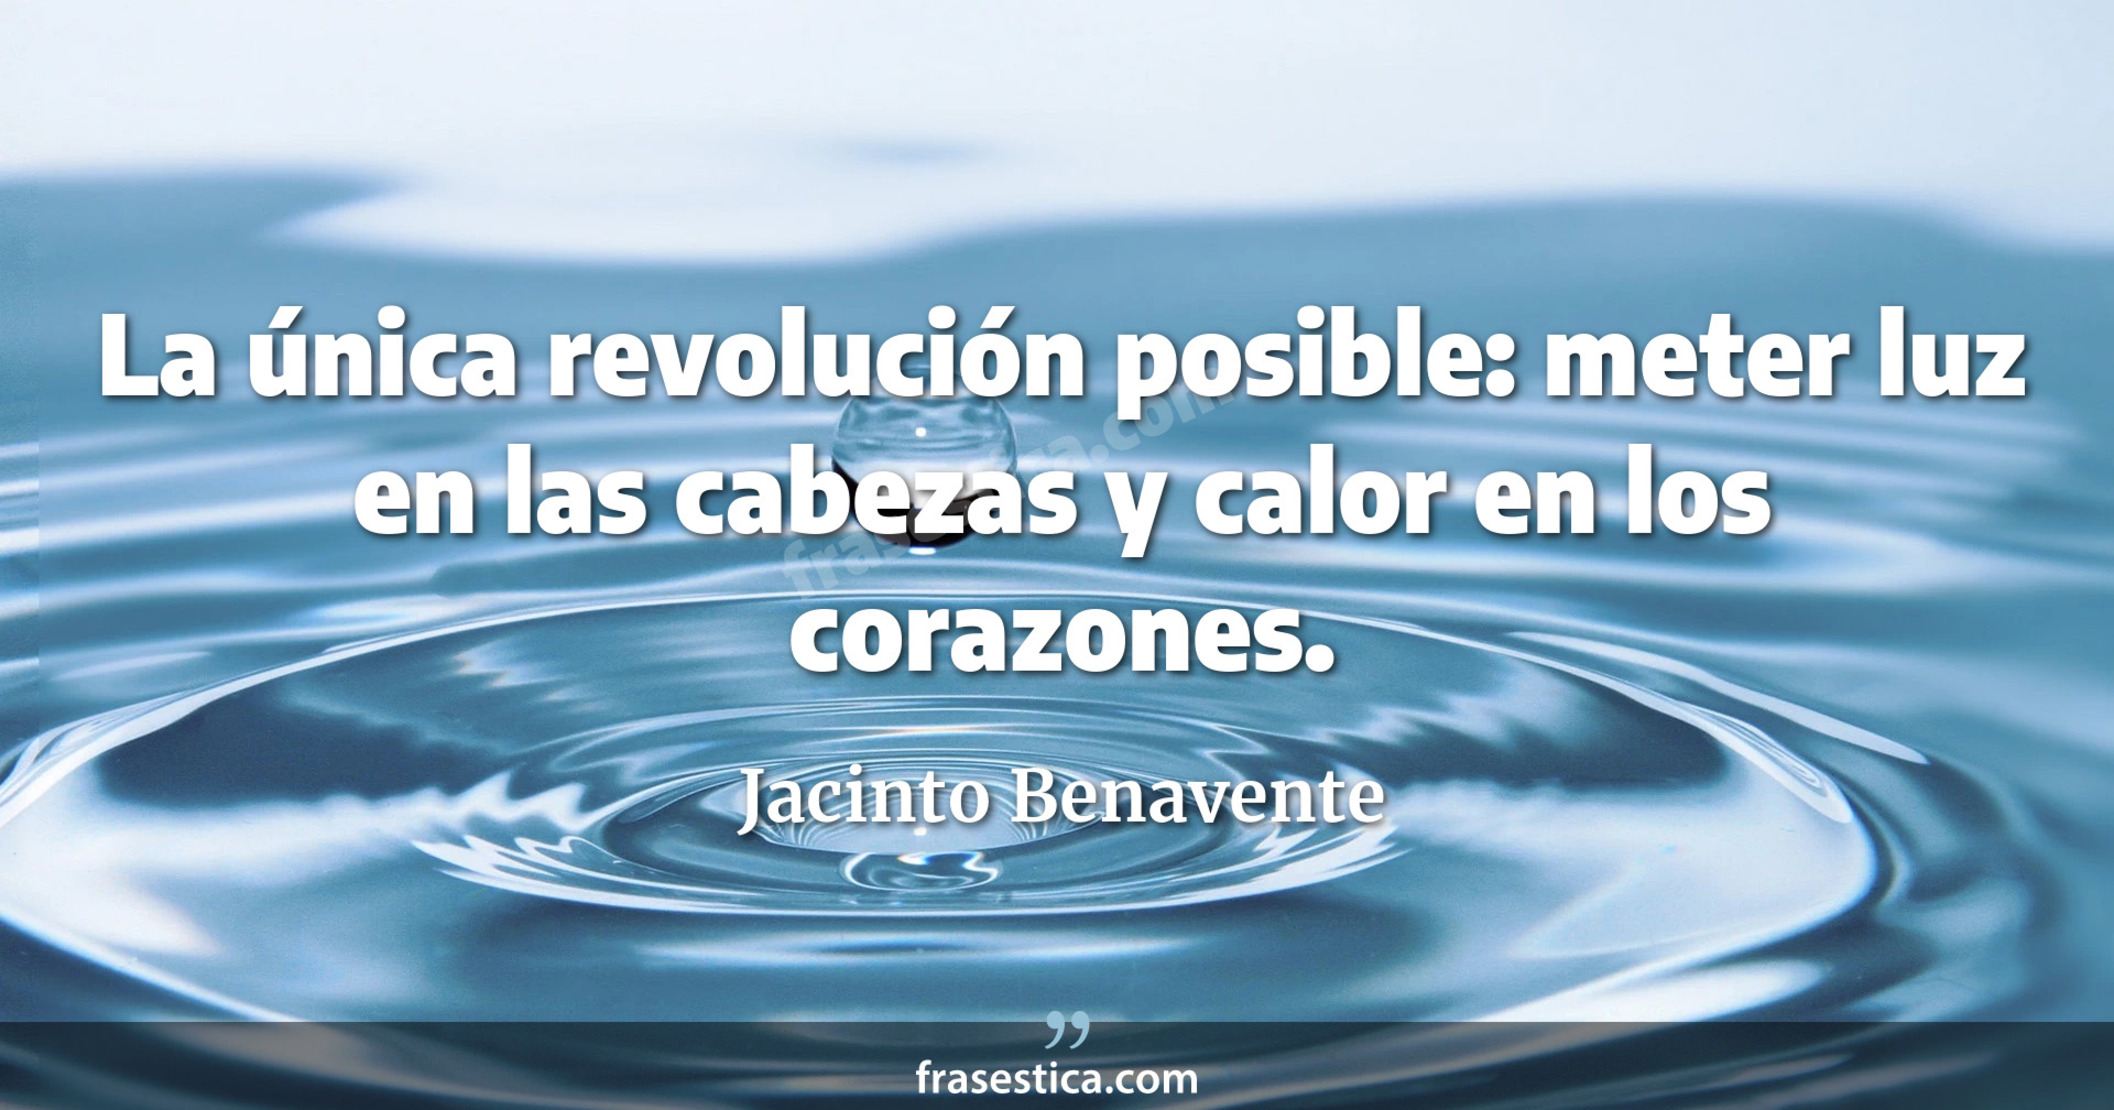 La única revolución posible: meter luz en las cabezas y calor en los corazones. - Jacinto Benavente